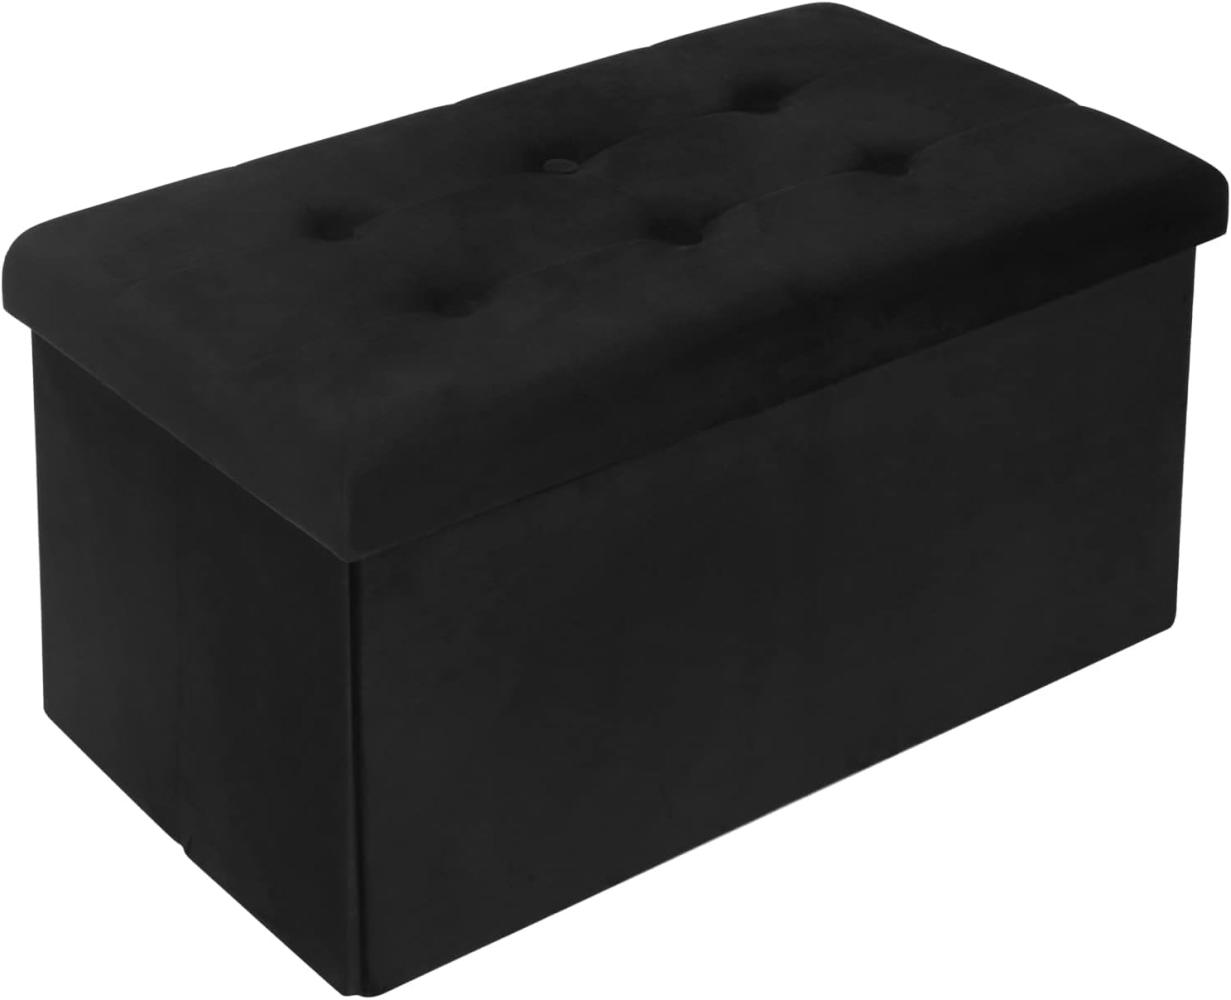 WOLTU Sitzbank mit Stauraum Sitzhocker Faltbar Aufbewahrungsbox Fußablage, Gepolsterte Sitzfläche aus Samt, max. statische Belastbarkeit 300 kg, 80 L, 76x37,5x38 cm, Schwarz, SH70sz Bild 1